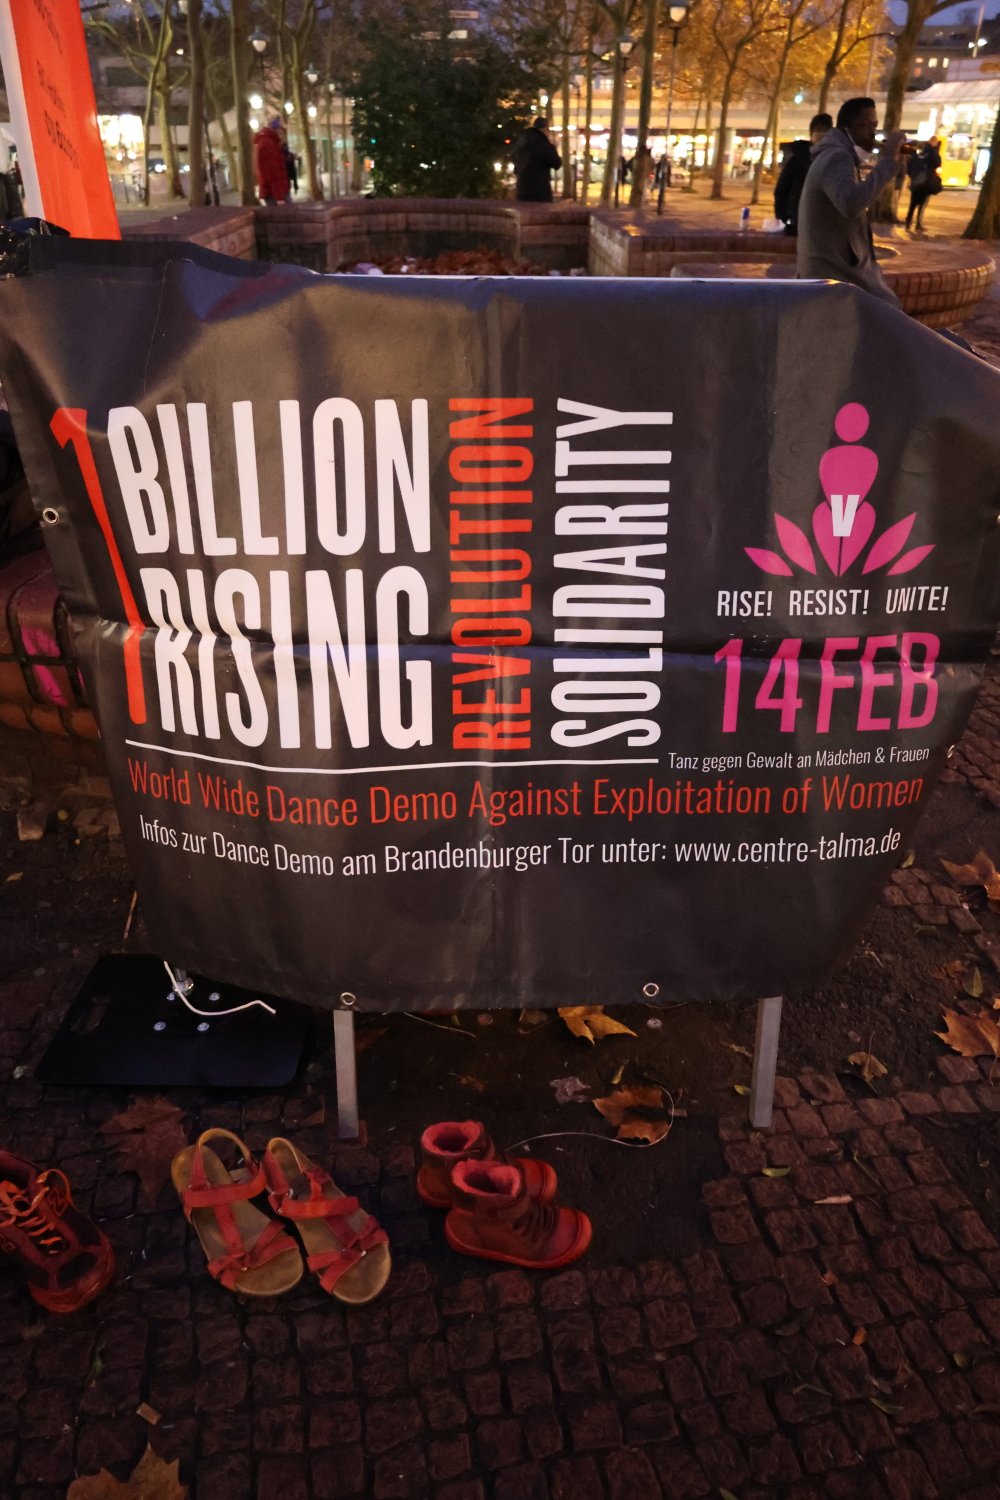 Rote Schuhe vor dem Banner "1 Billion Rising Revolution 2022 Solidarity", einer internationalen Veranstaltung am 14.02.2022 - Tanz gegen Gewalt an Mädchen und Frauen